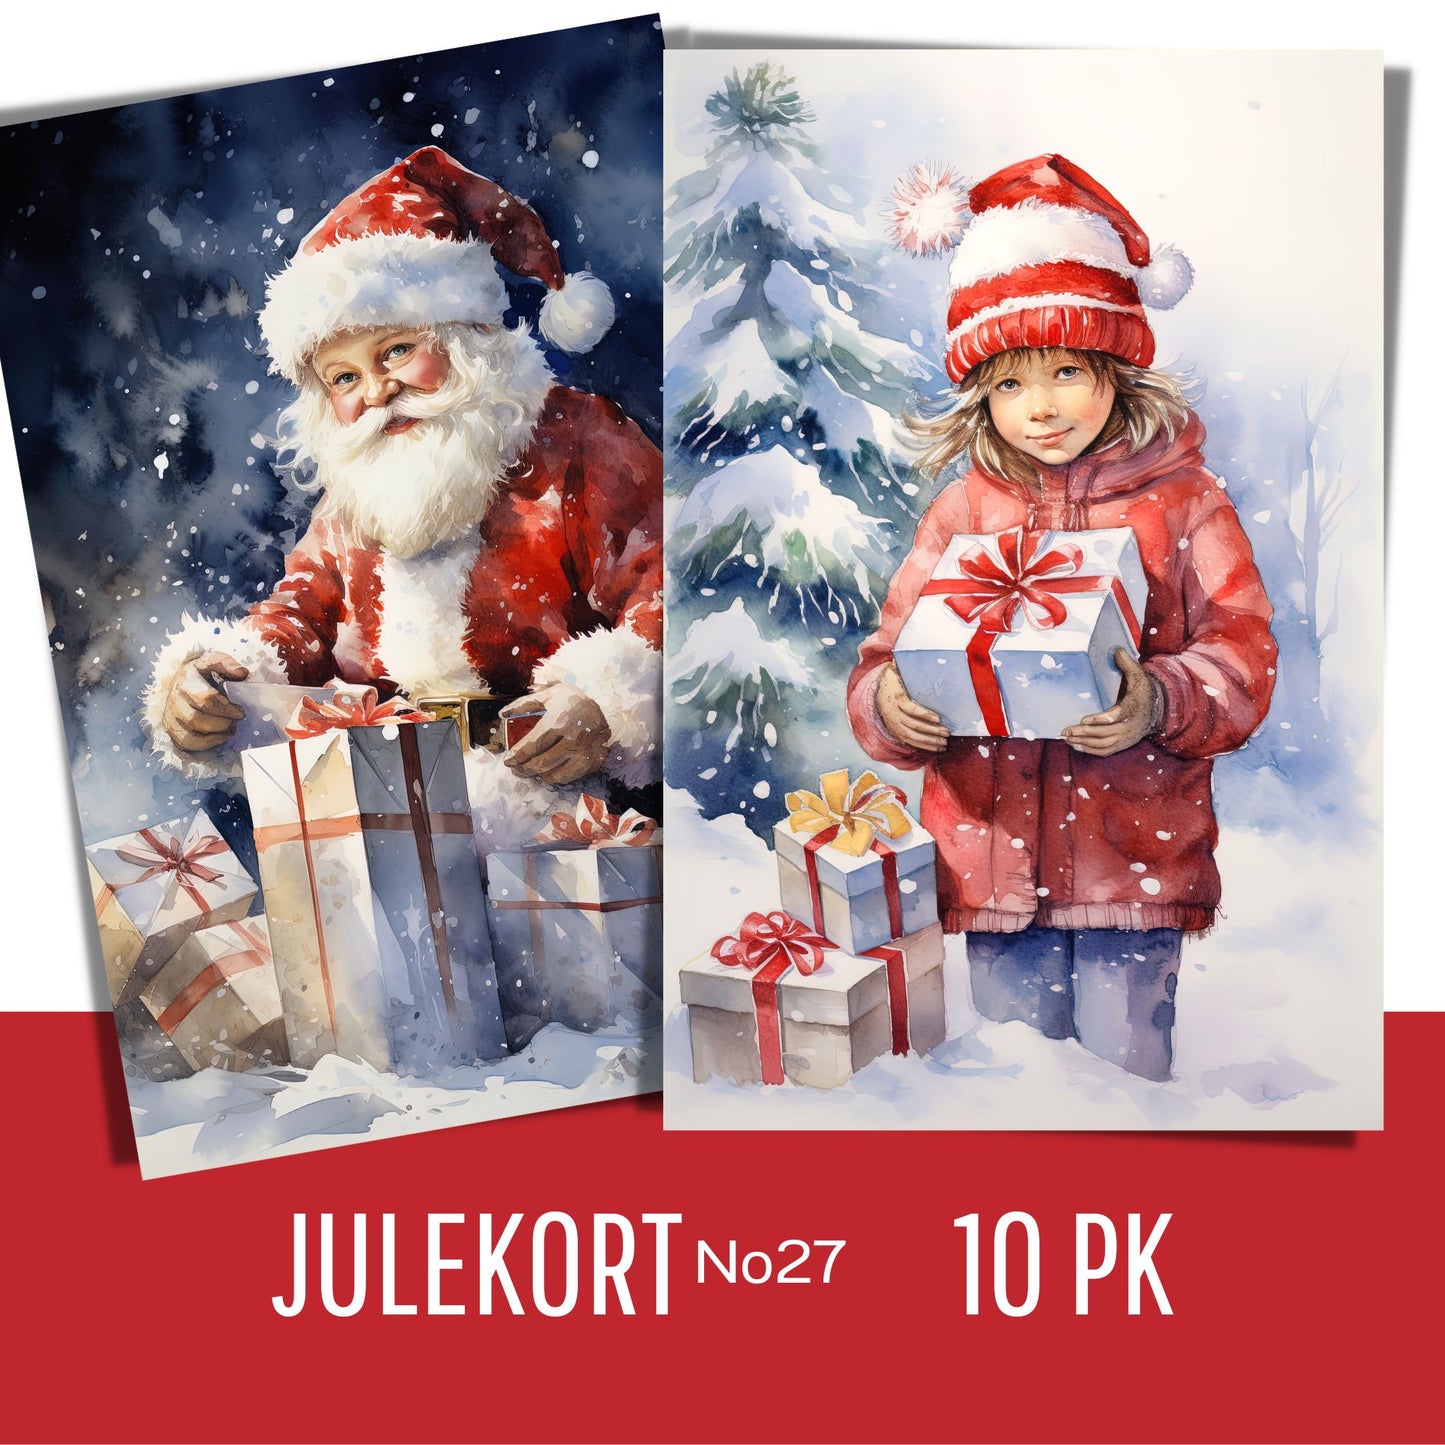 Serie med dekorative grafiske julekort med nostalgisk preg. Pakken inneholder 10 assorterte kort, trykket på 300 mg papir.